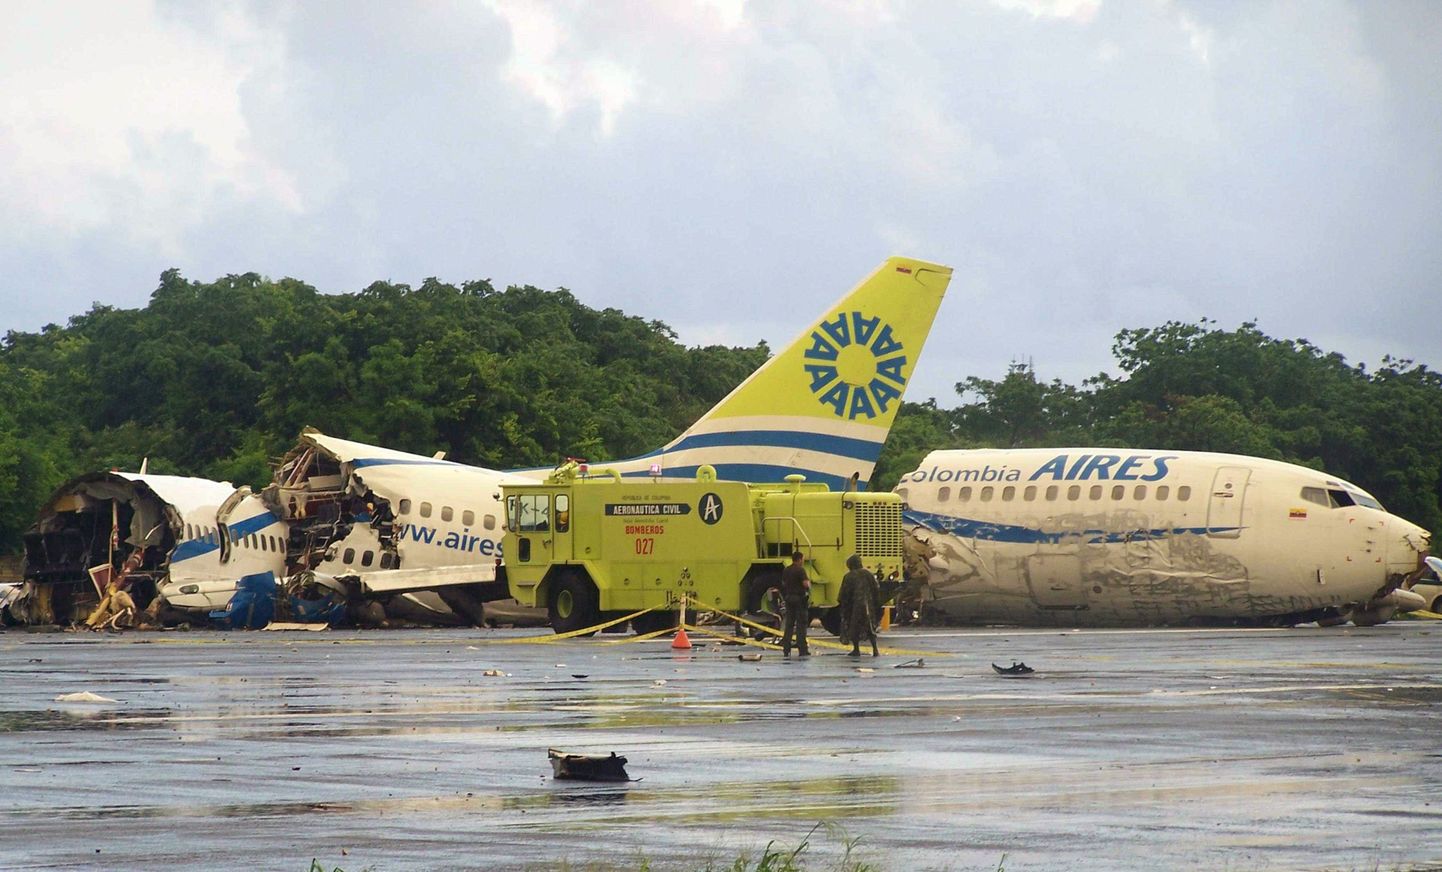 San Andrési saare lennuväljal toimunud lennuõnnetuse võis põhjustada pikselöök